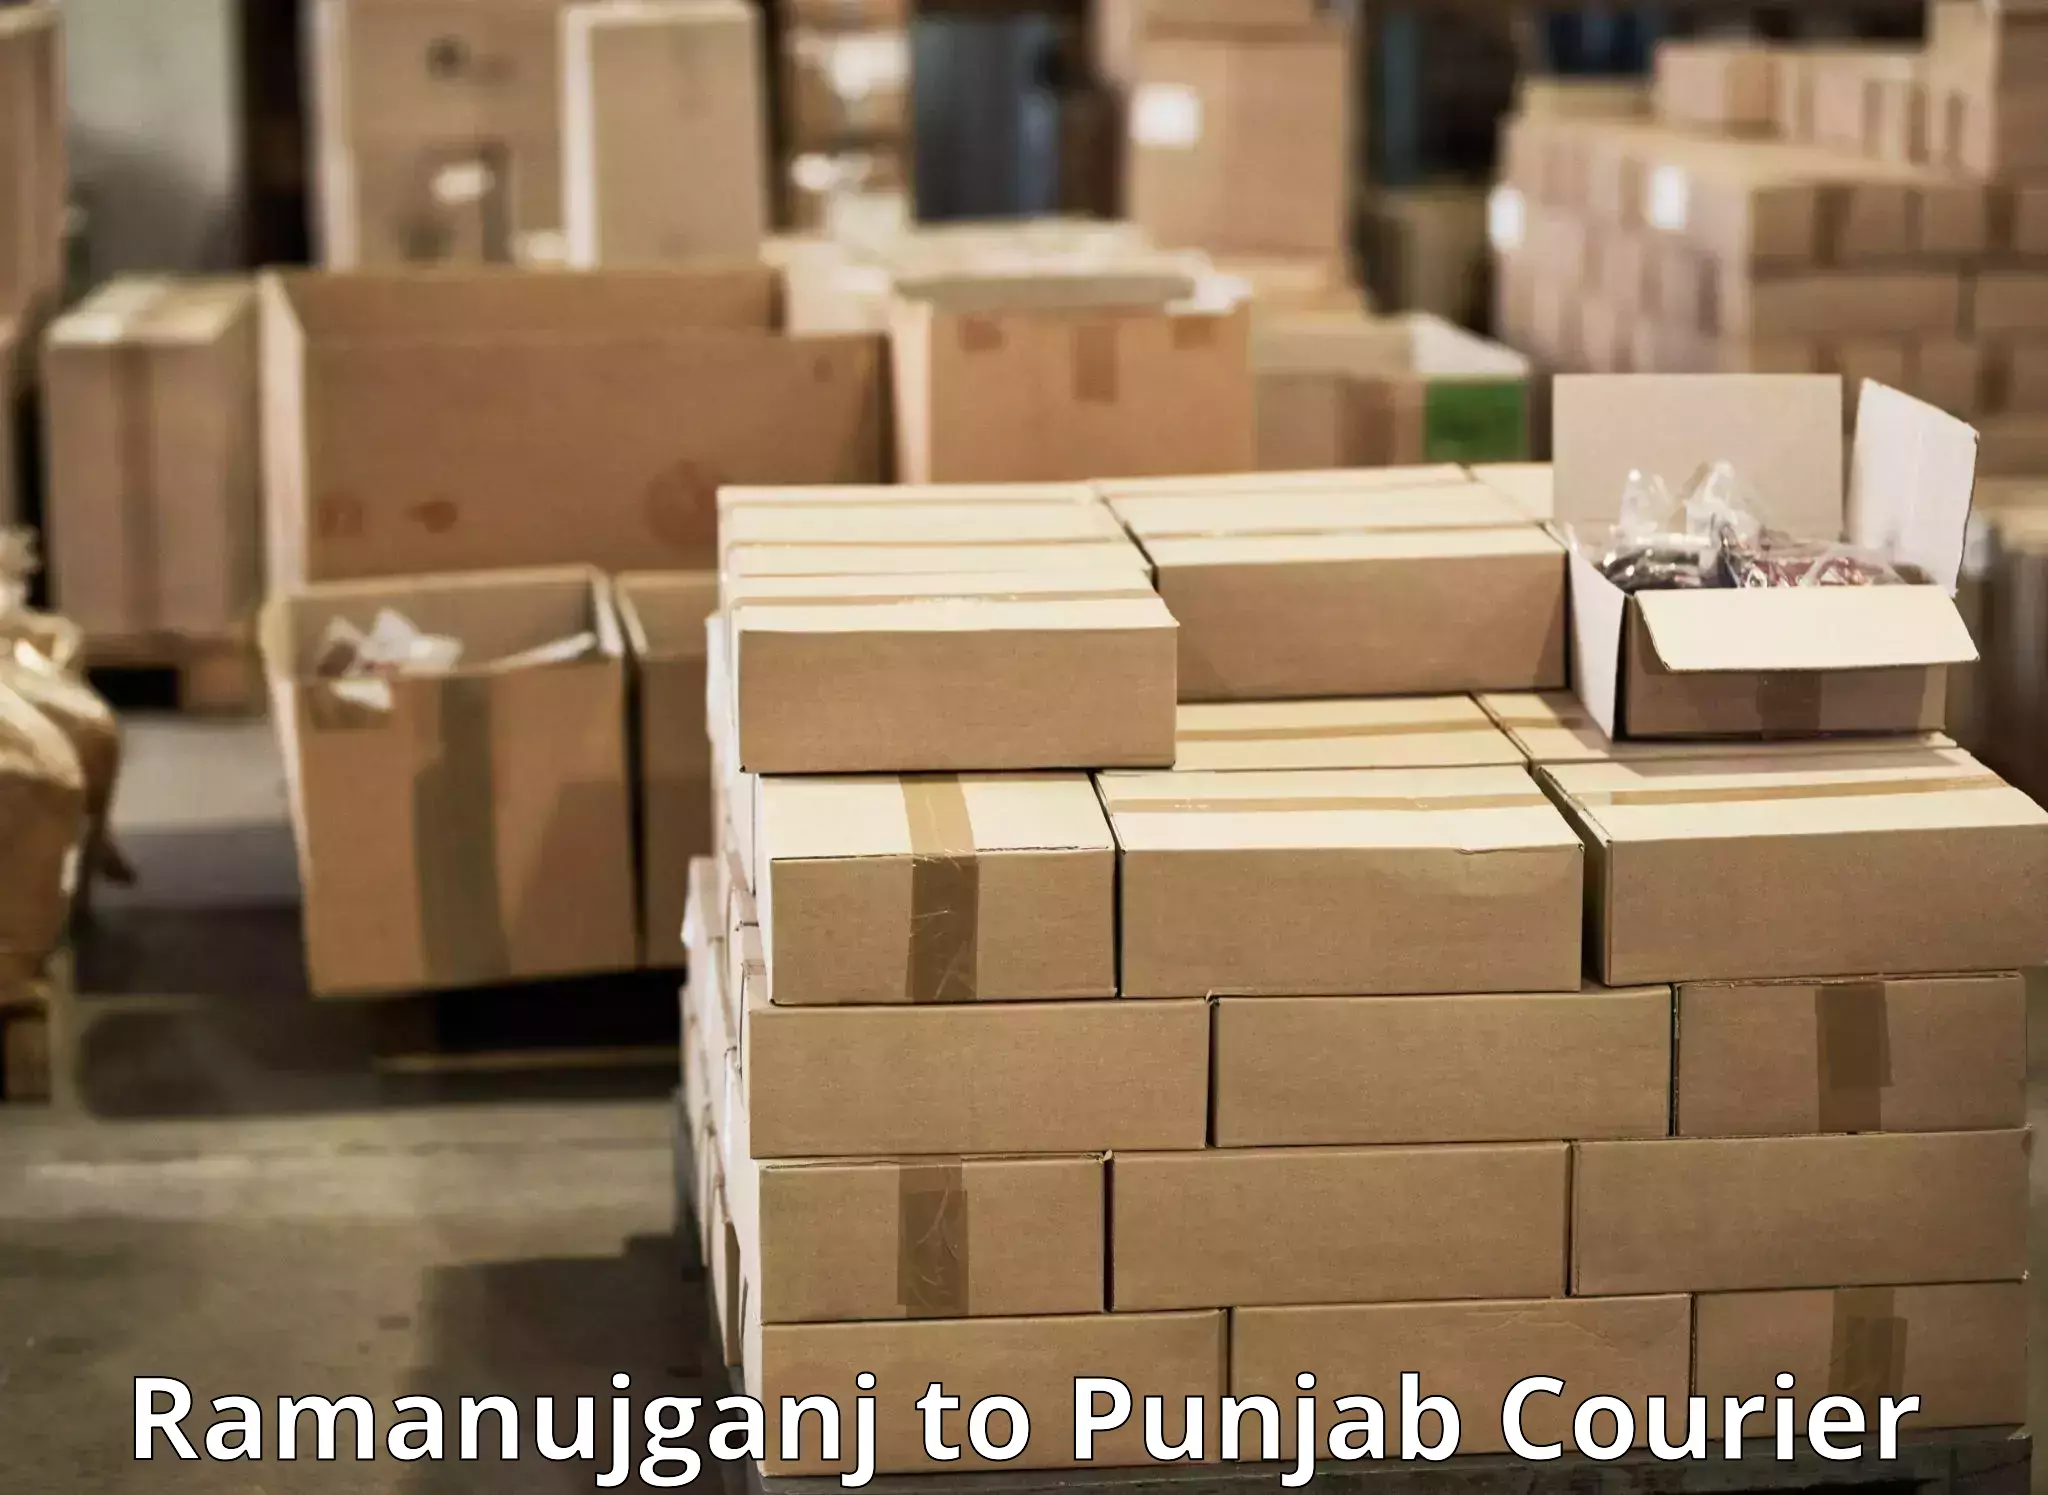 Affordable parcel service Ramanujganj to Punjab